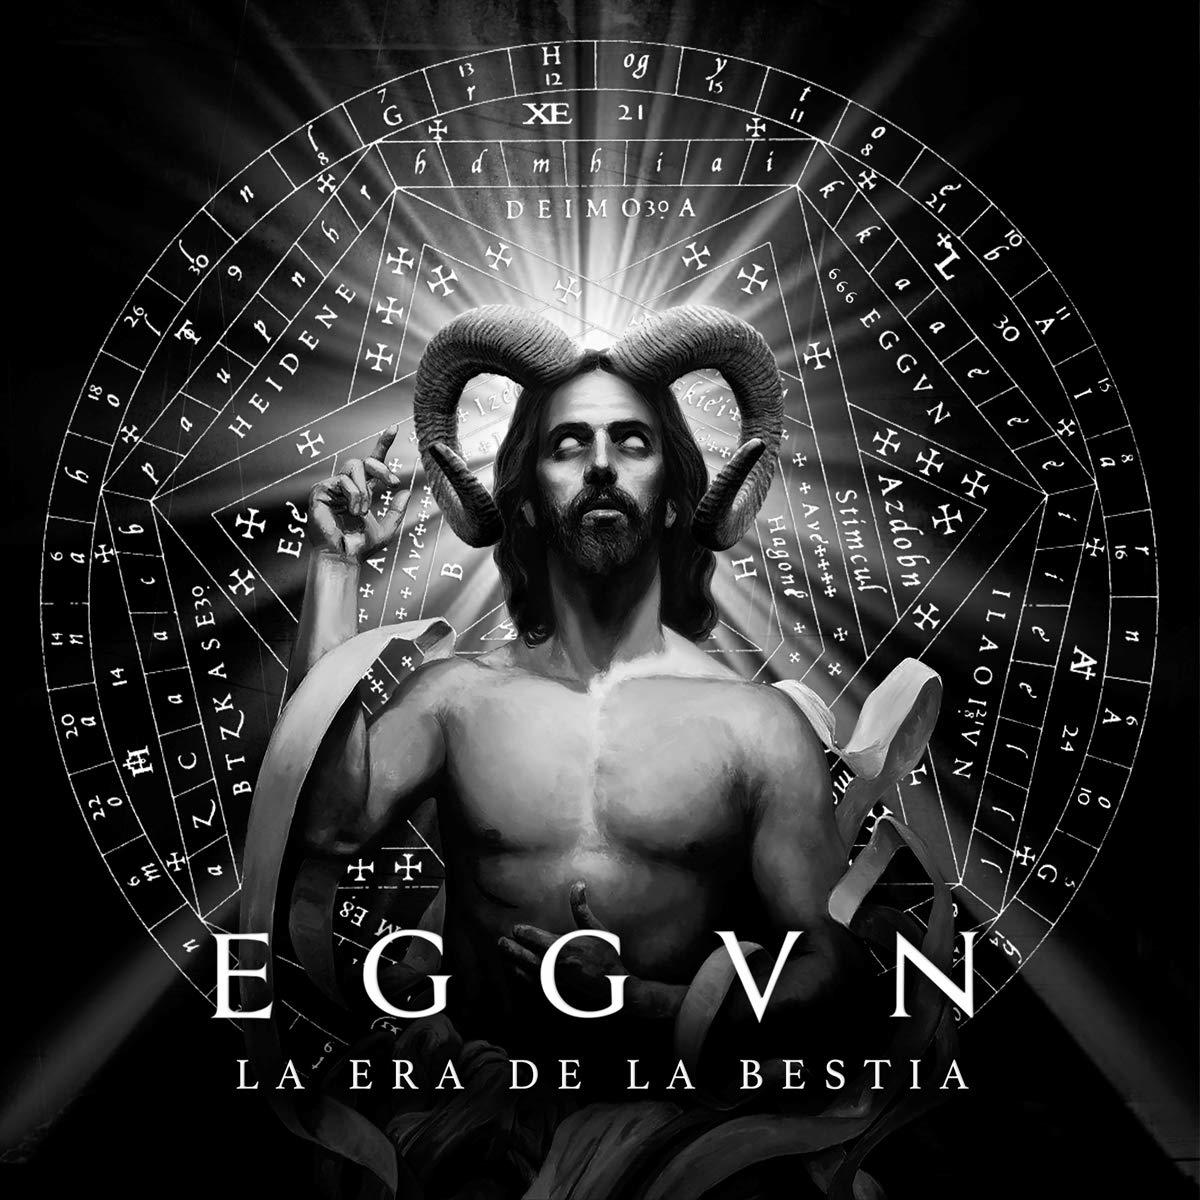 (CD) La la Bestia Era de Eggvn - -